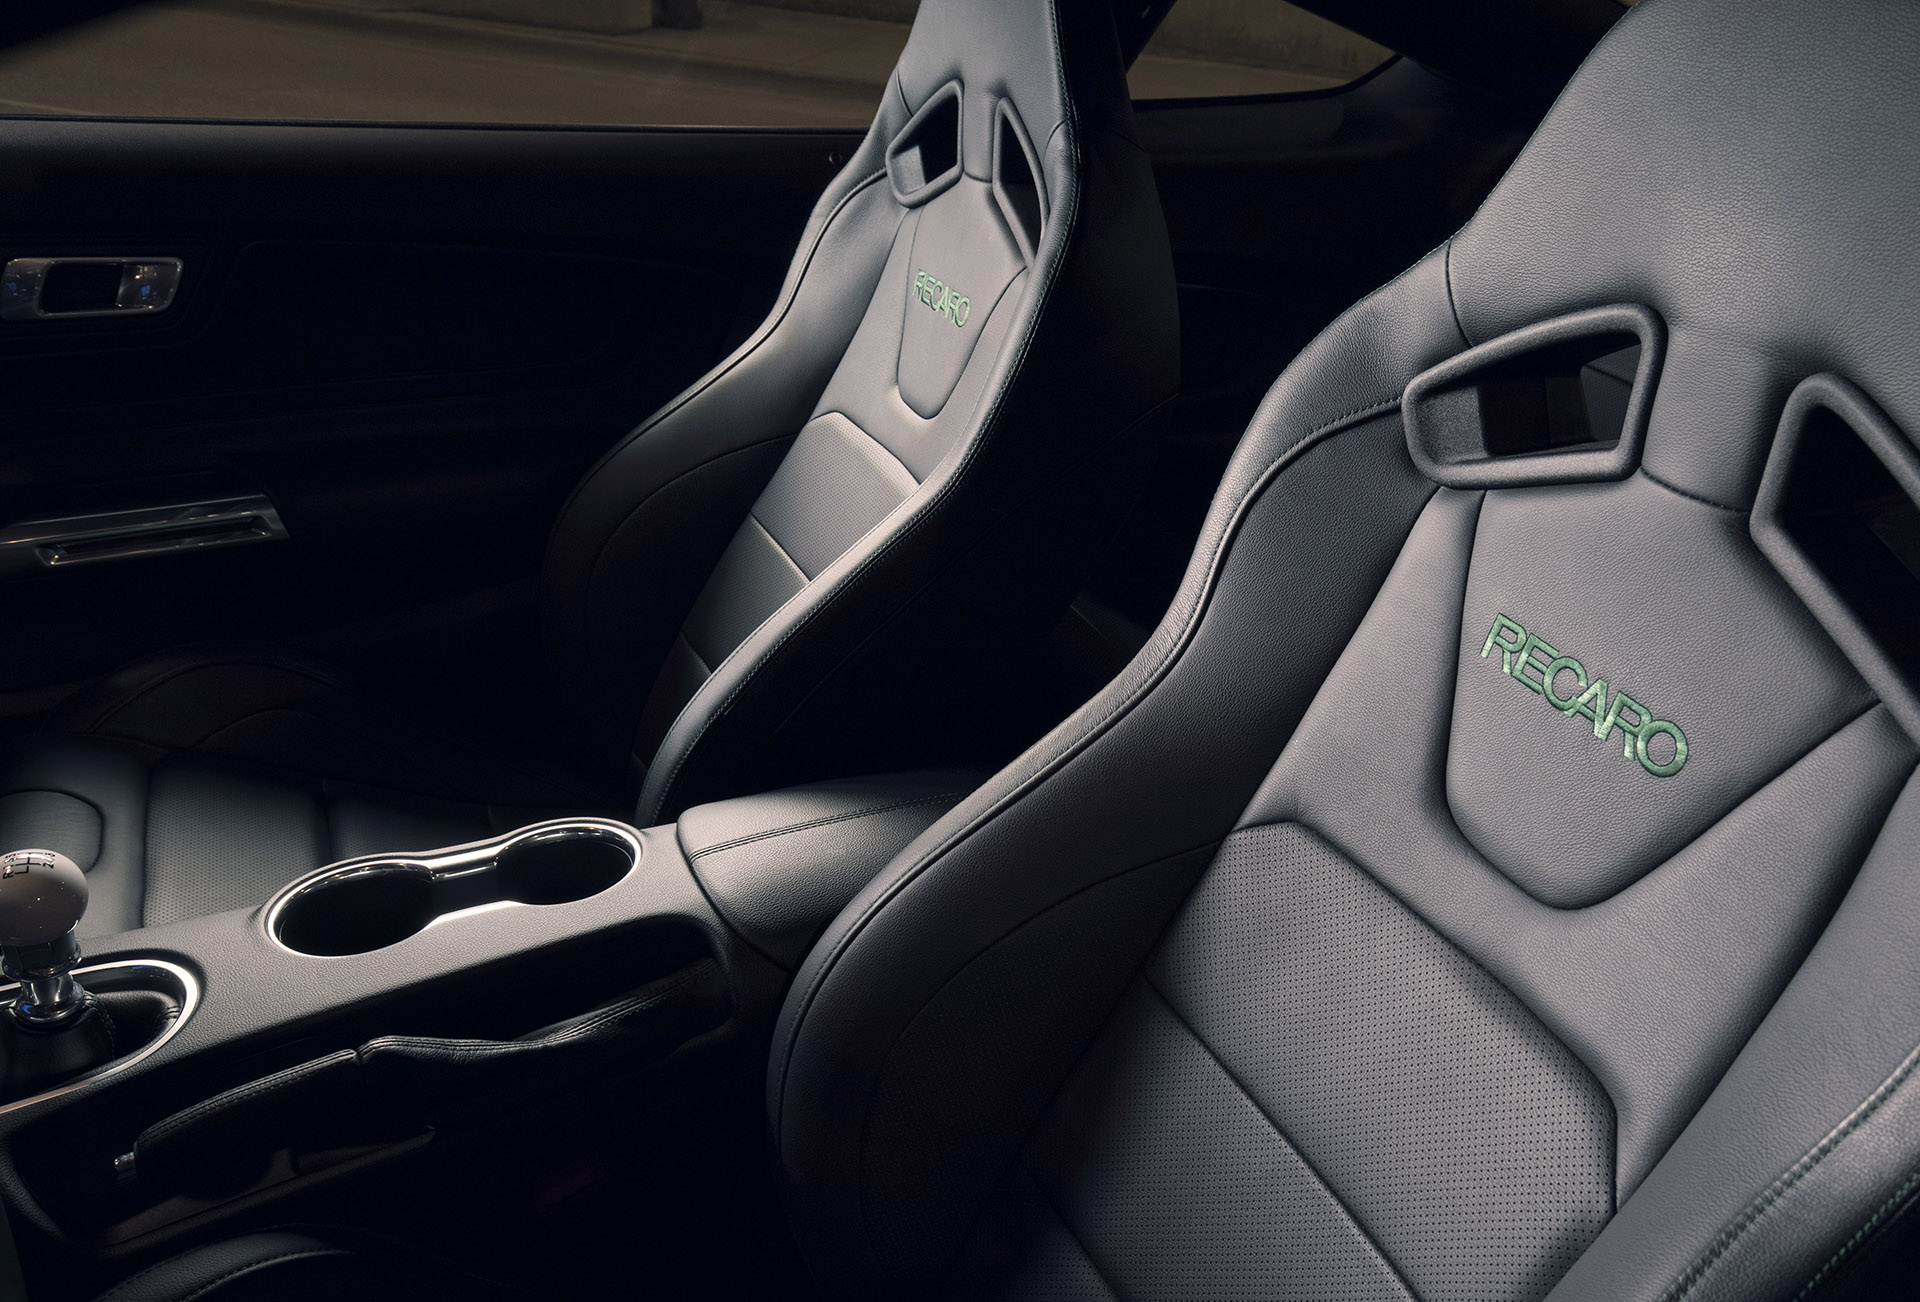 2019 Bullitt Mustang interior